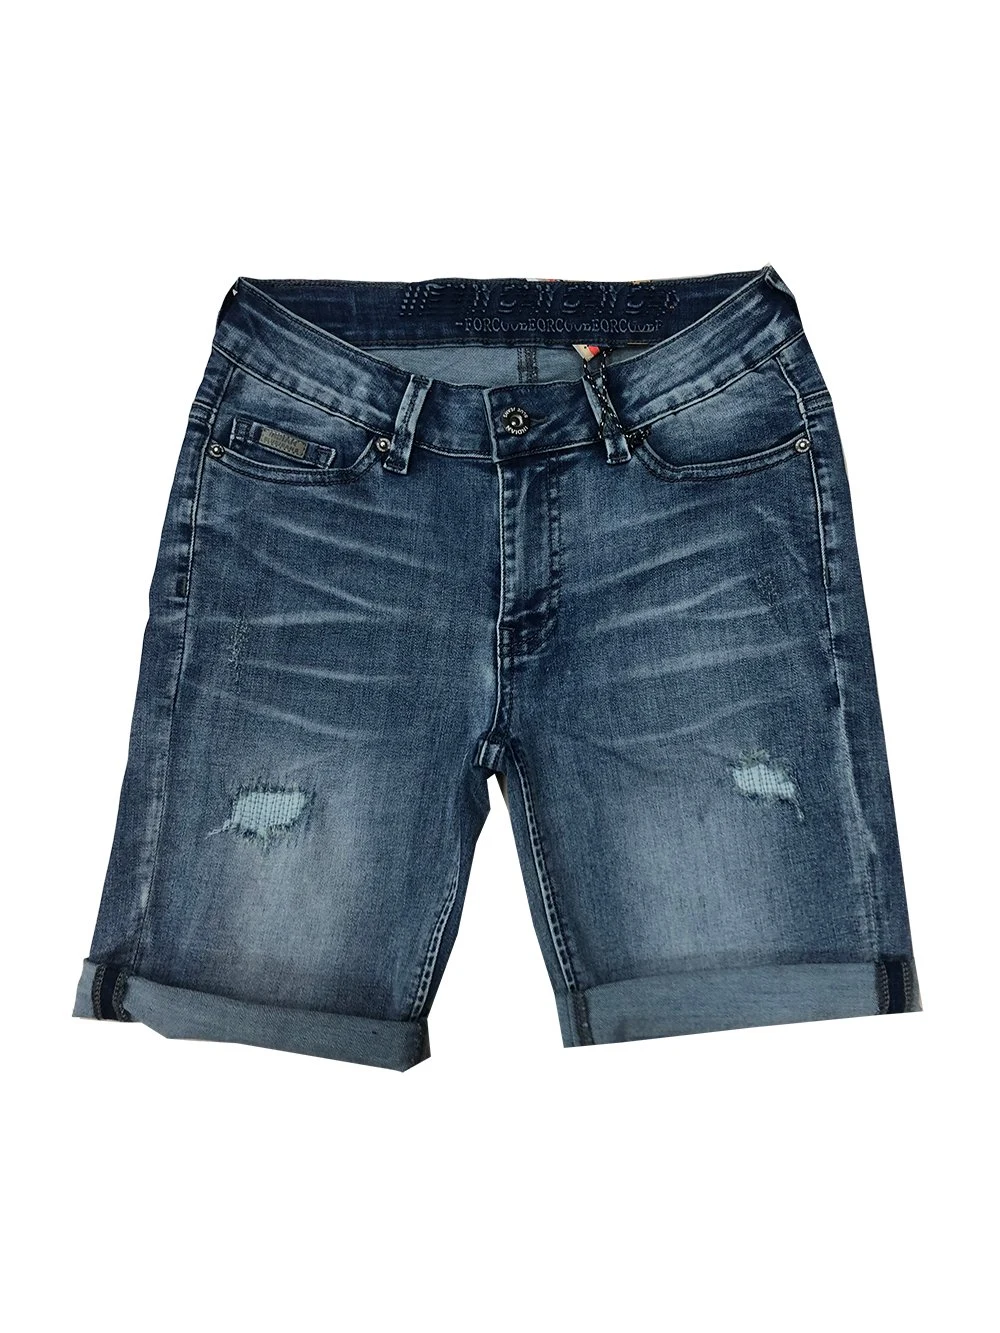 Wholesale Boys Short Denim Jeans Dark Blue Kids Pants OEM ODM Denim Shorts